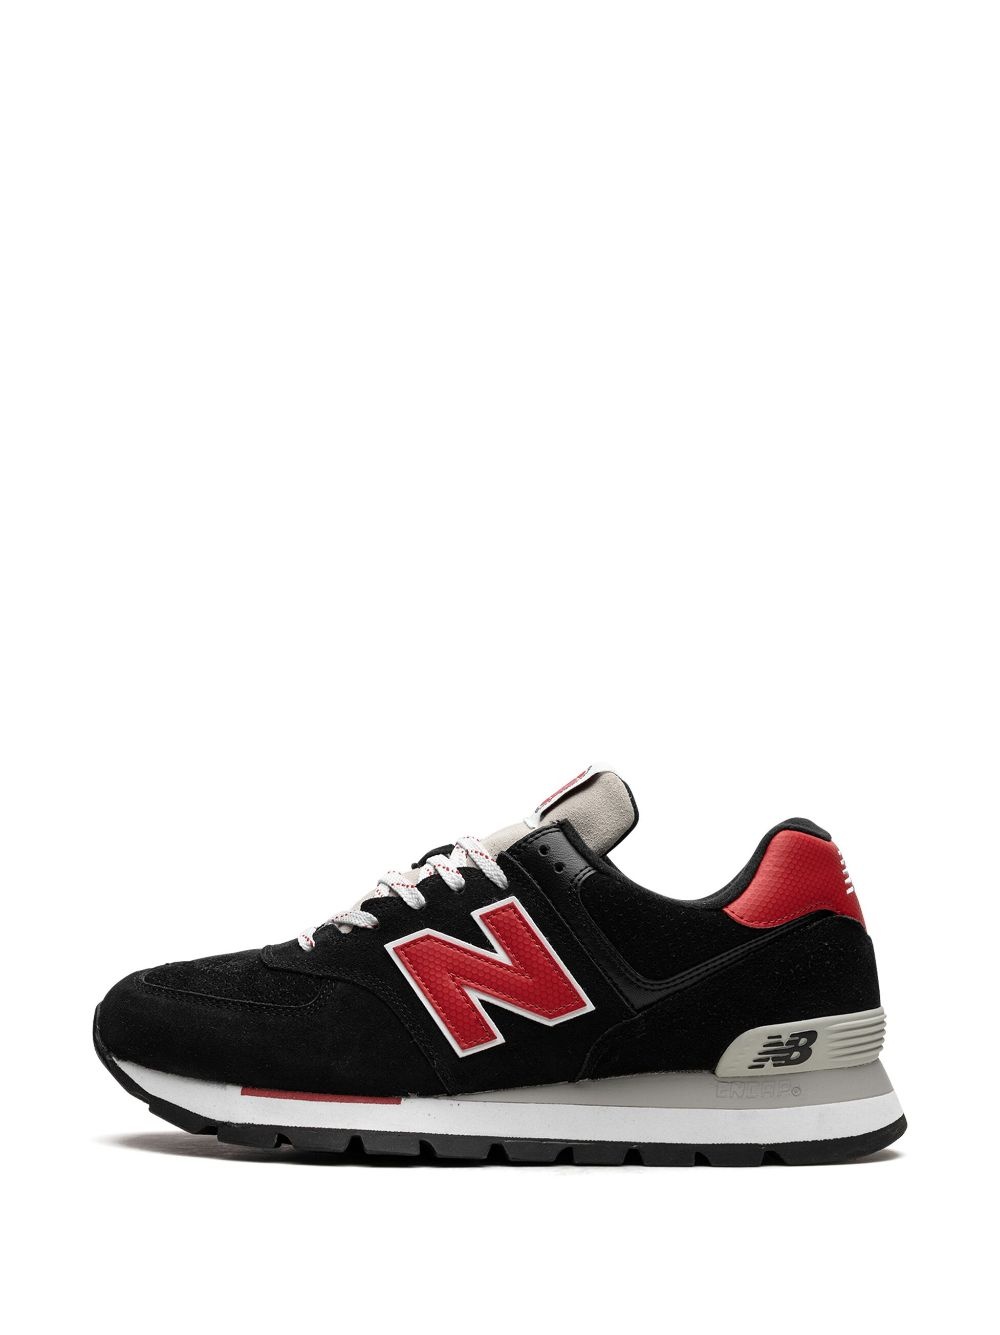 574 "Black/Red" sneakers - 5